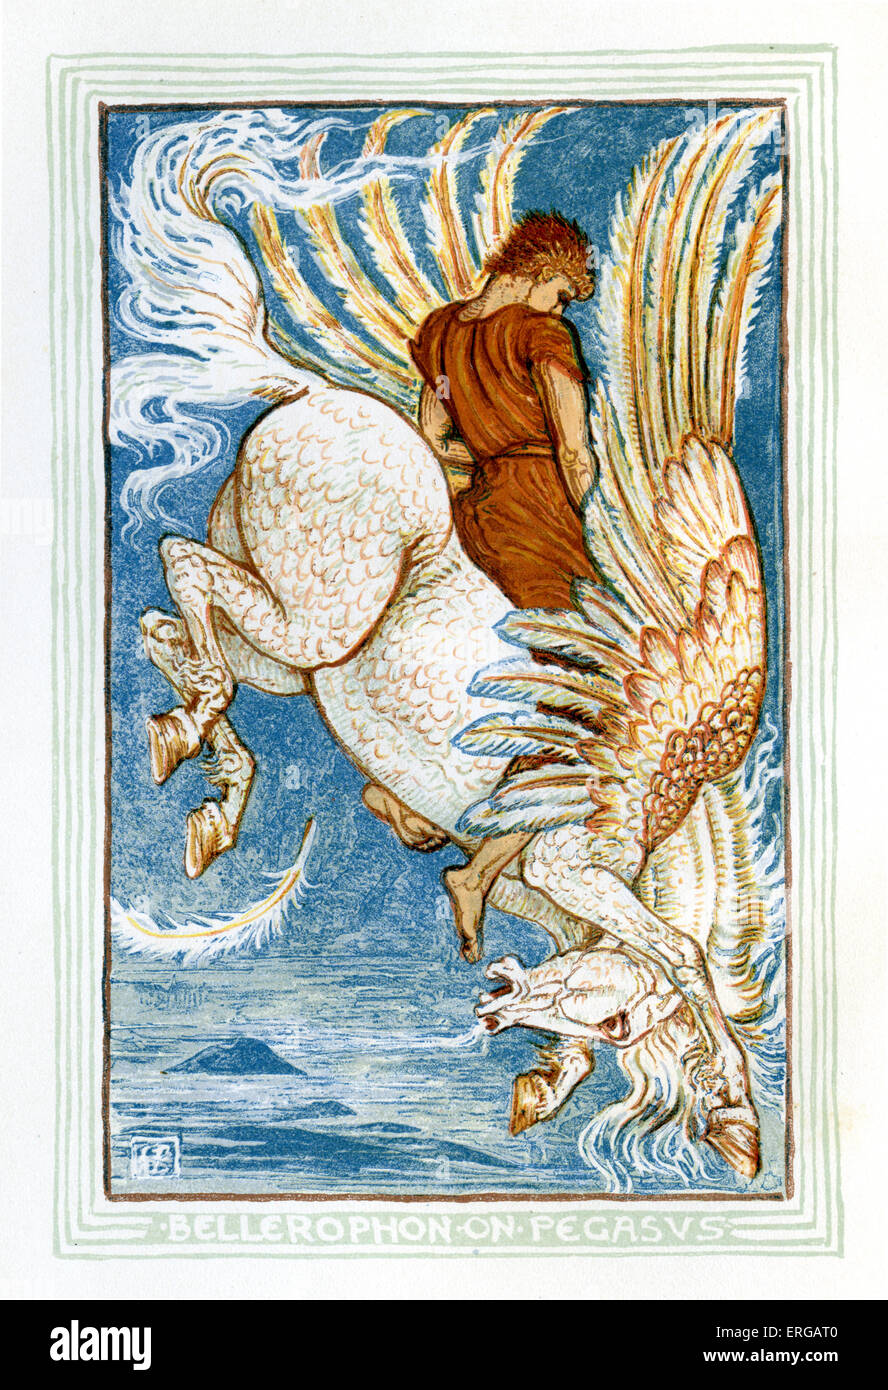 Bellerophon équitation Pegasus. Racontant des mythes grecs par Nathaniel Hawthorne (1804 - 1864). Illustrations de Walter Crane 1845 Banque D'Images